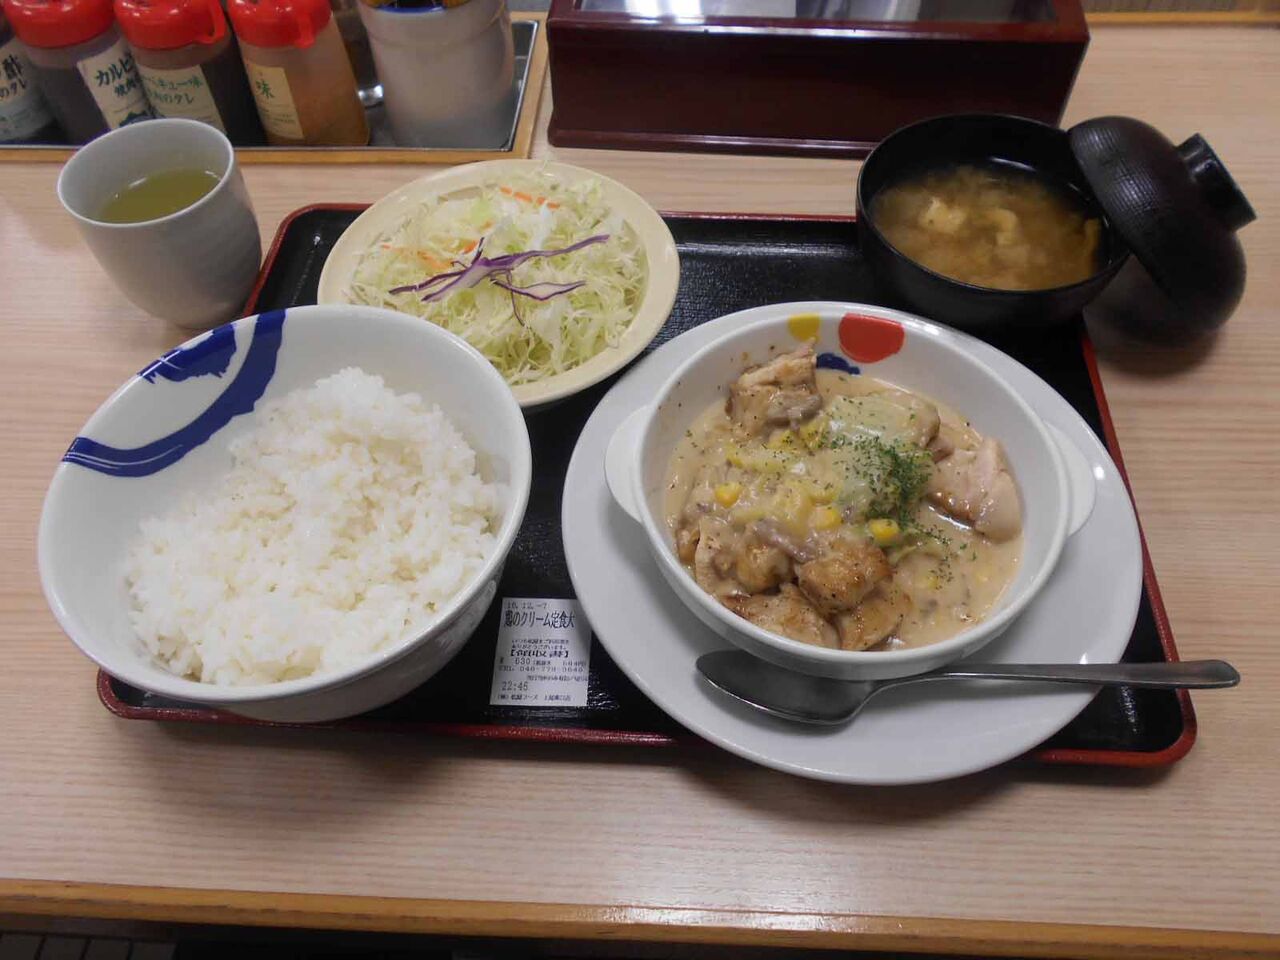 松屋 の 鶏と白菜のクリームシチュー定食 竹内用の鉄道と食欲日記 平成版